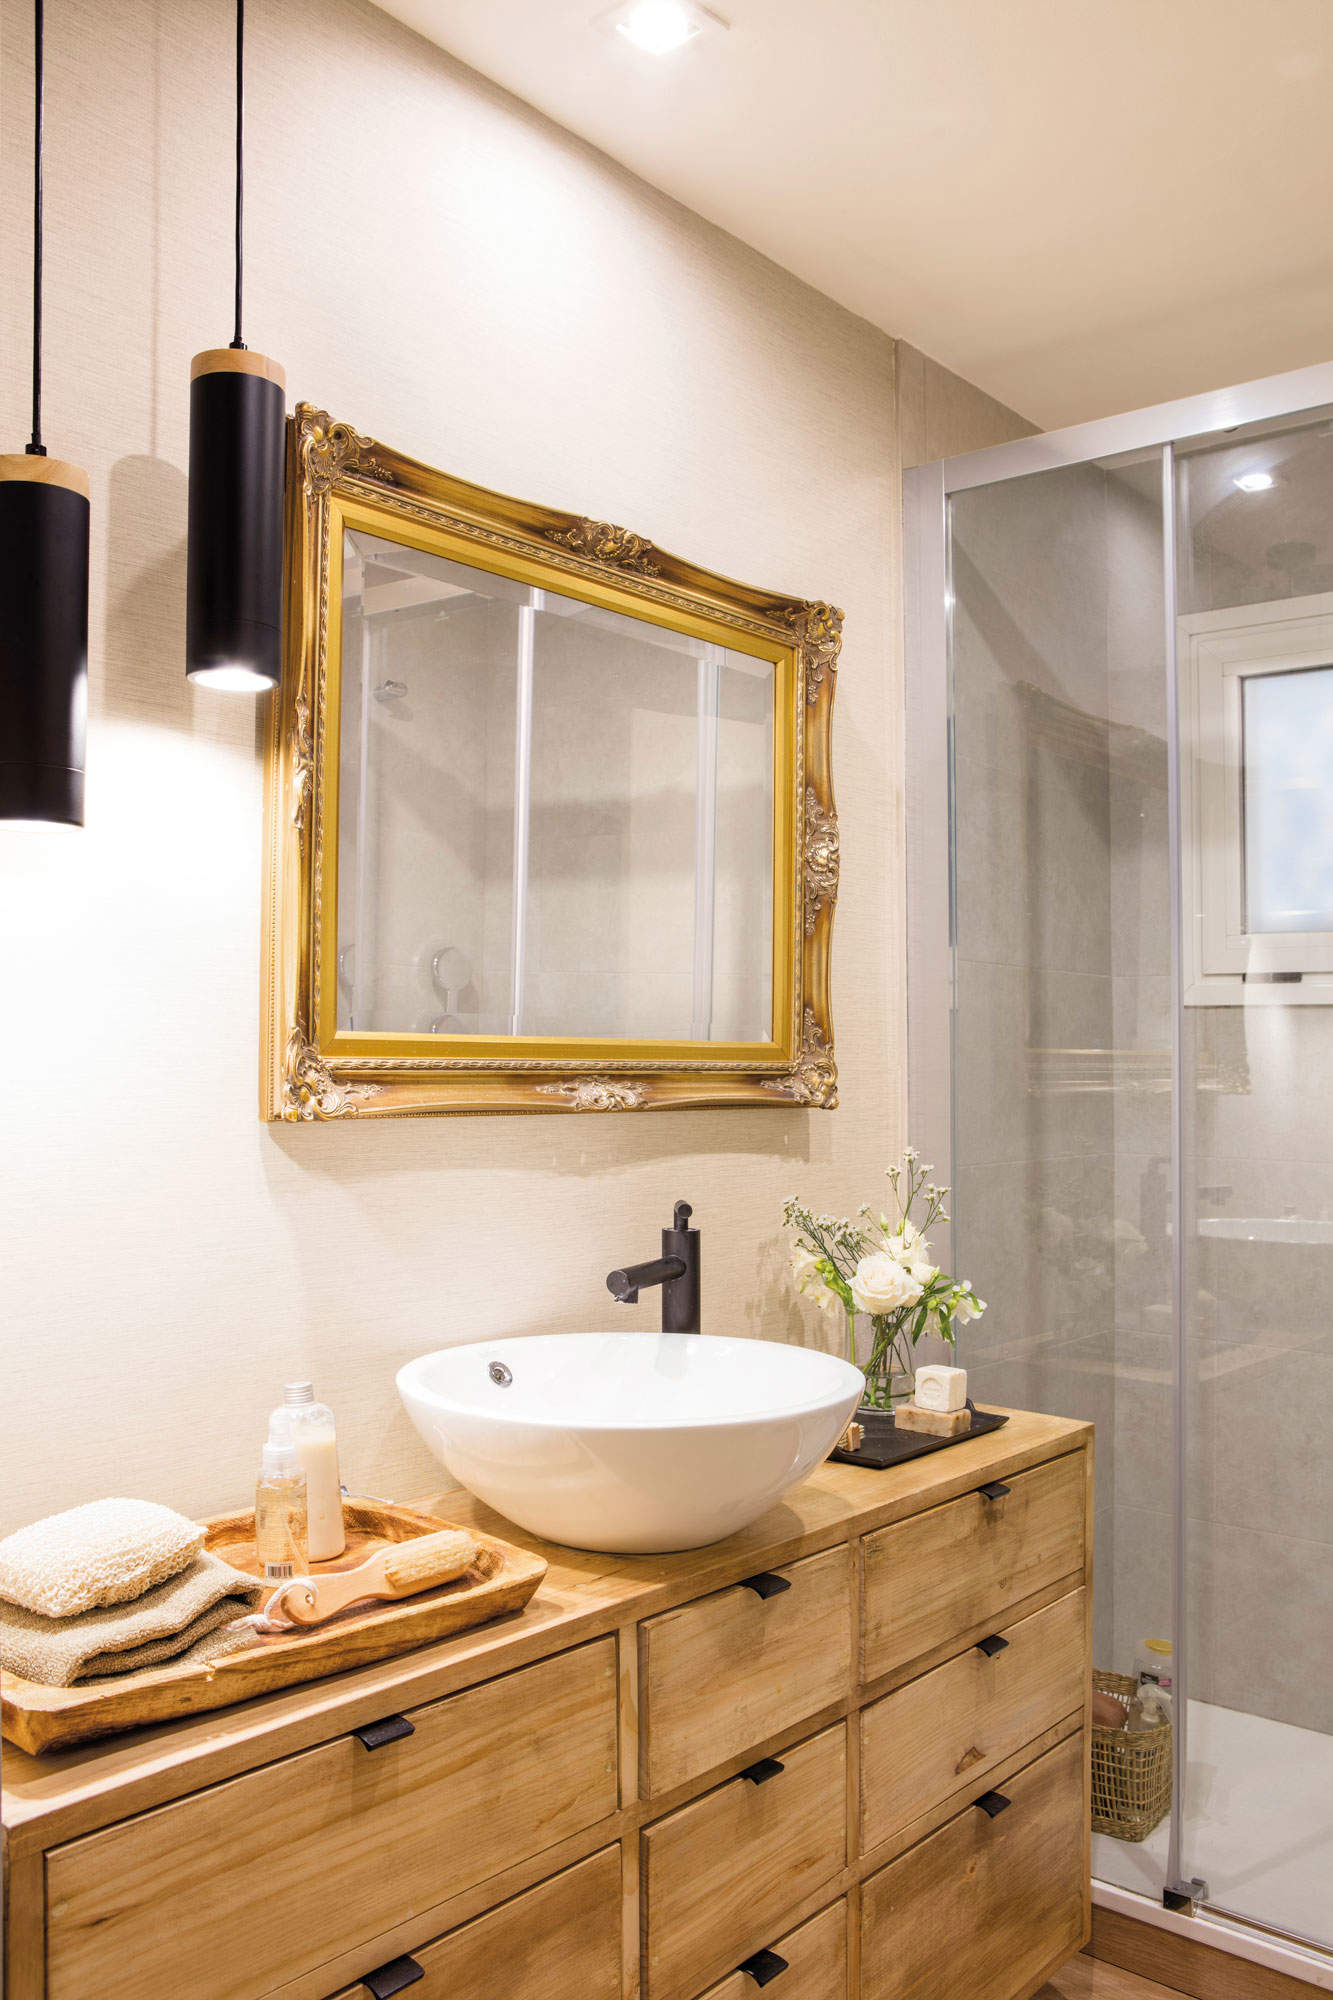 Baño con espejo rectangular con marco dorado